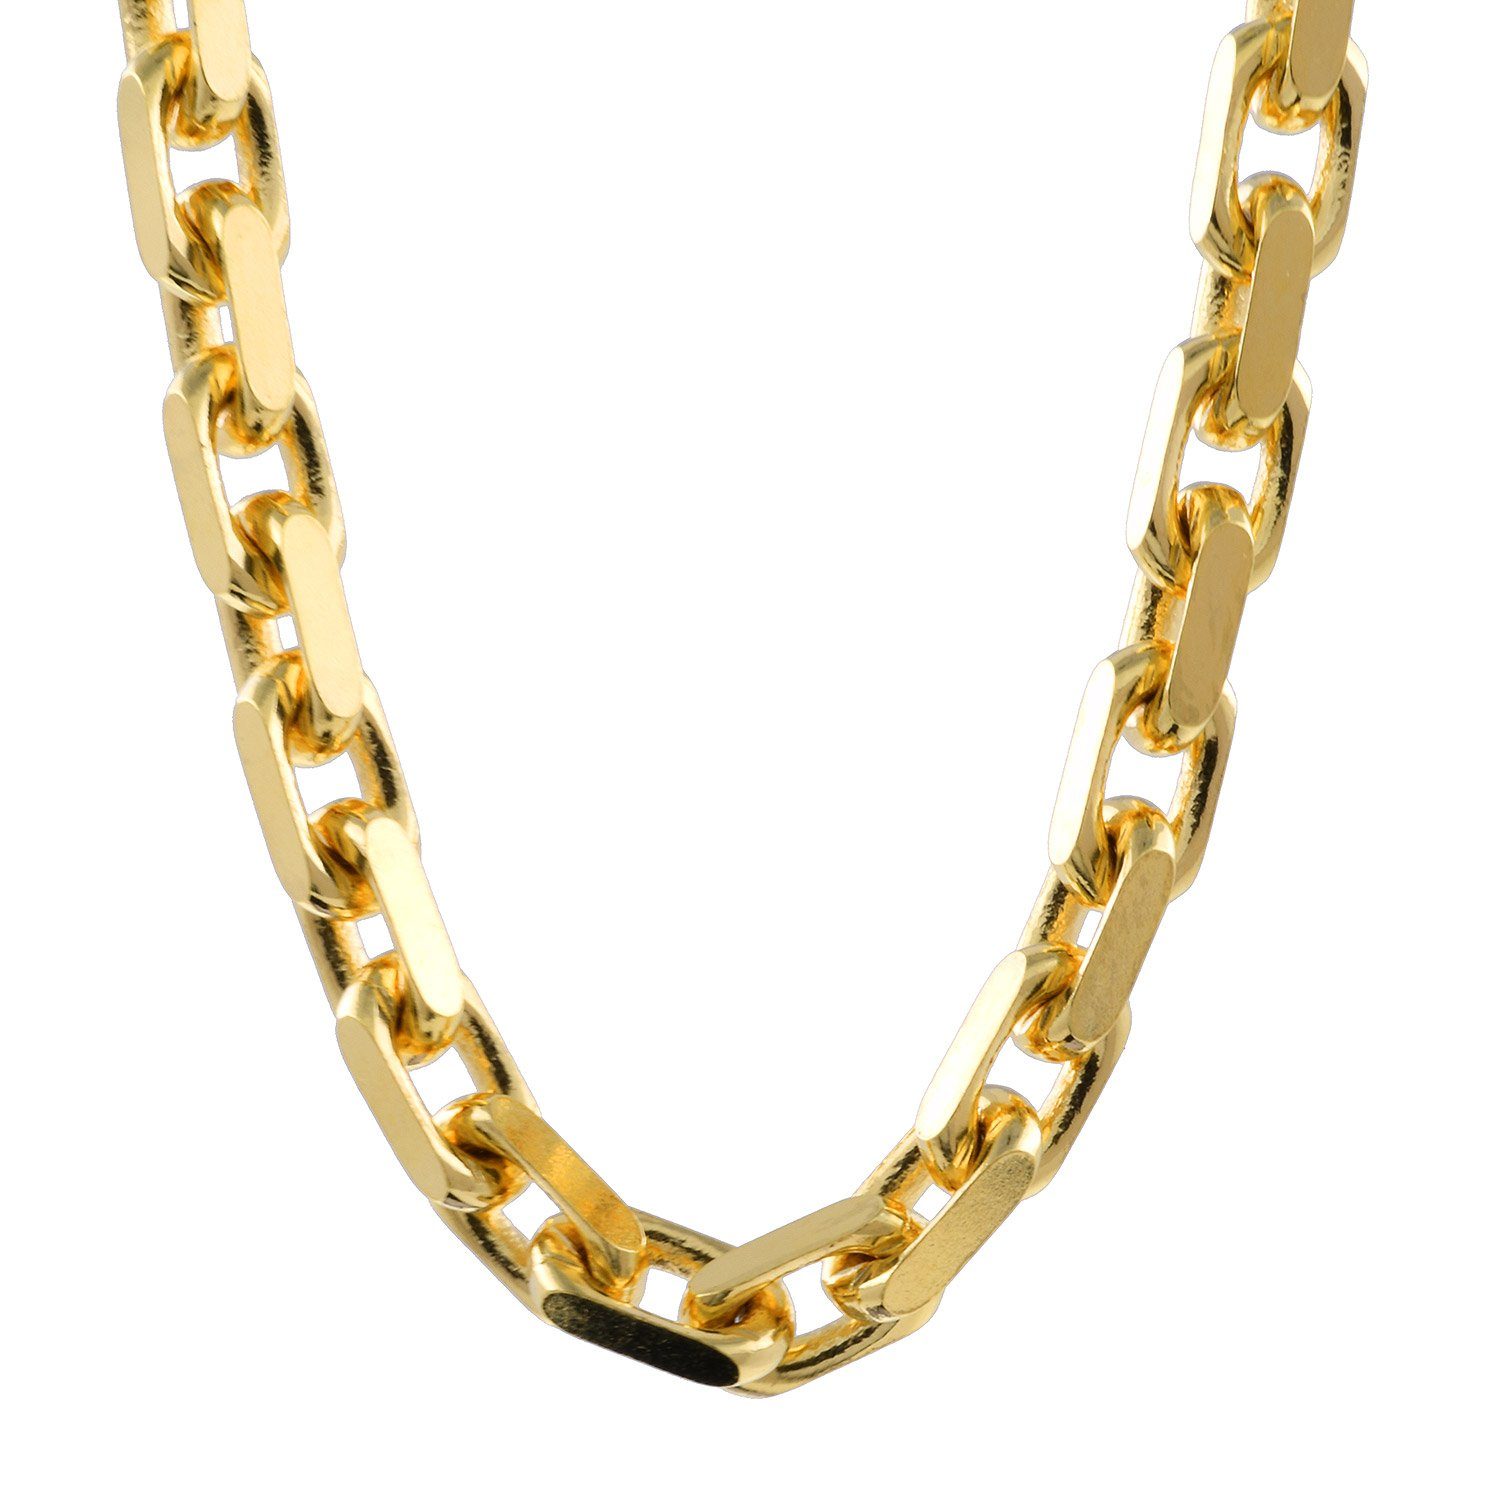 750-18 Qualität Juwelier Germany, in Gold, Länge - 3,0mm Goldkette in HOPLO Kette 45cm - diamantiert Made Breite Karat Ankerkette Edle